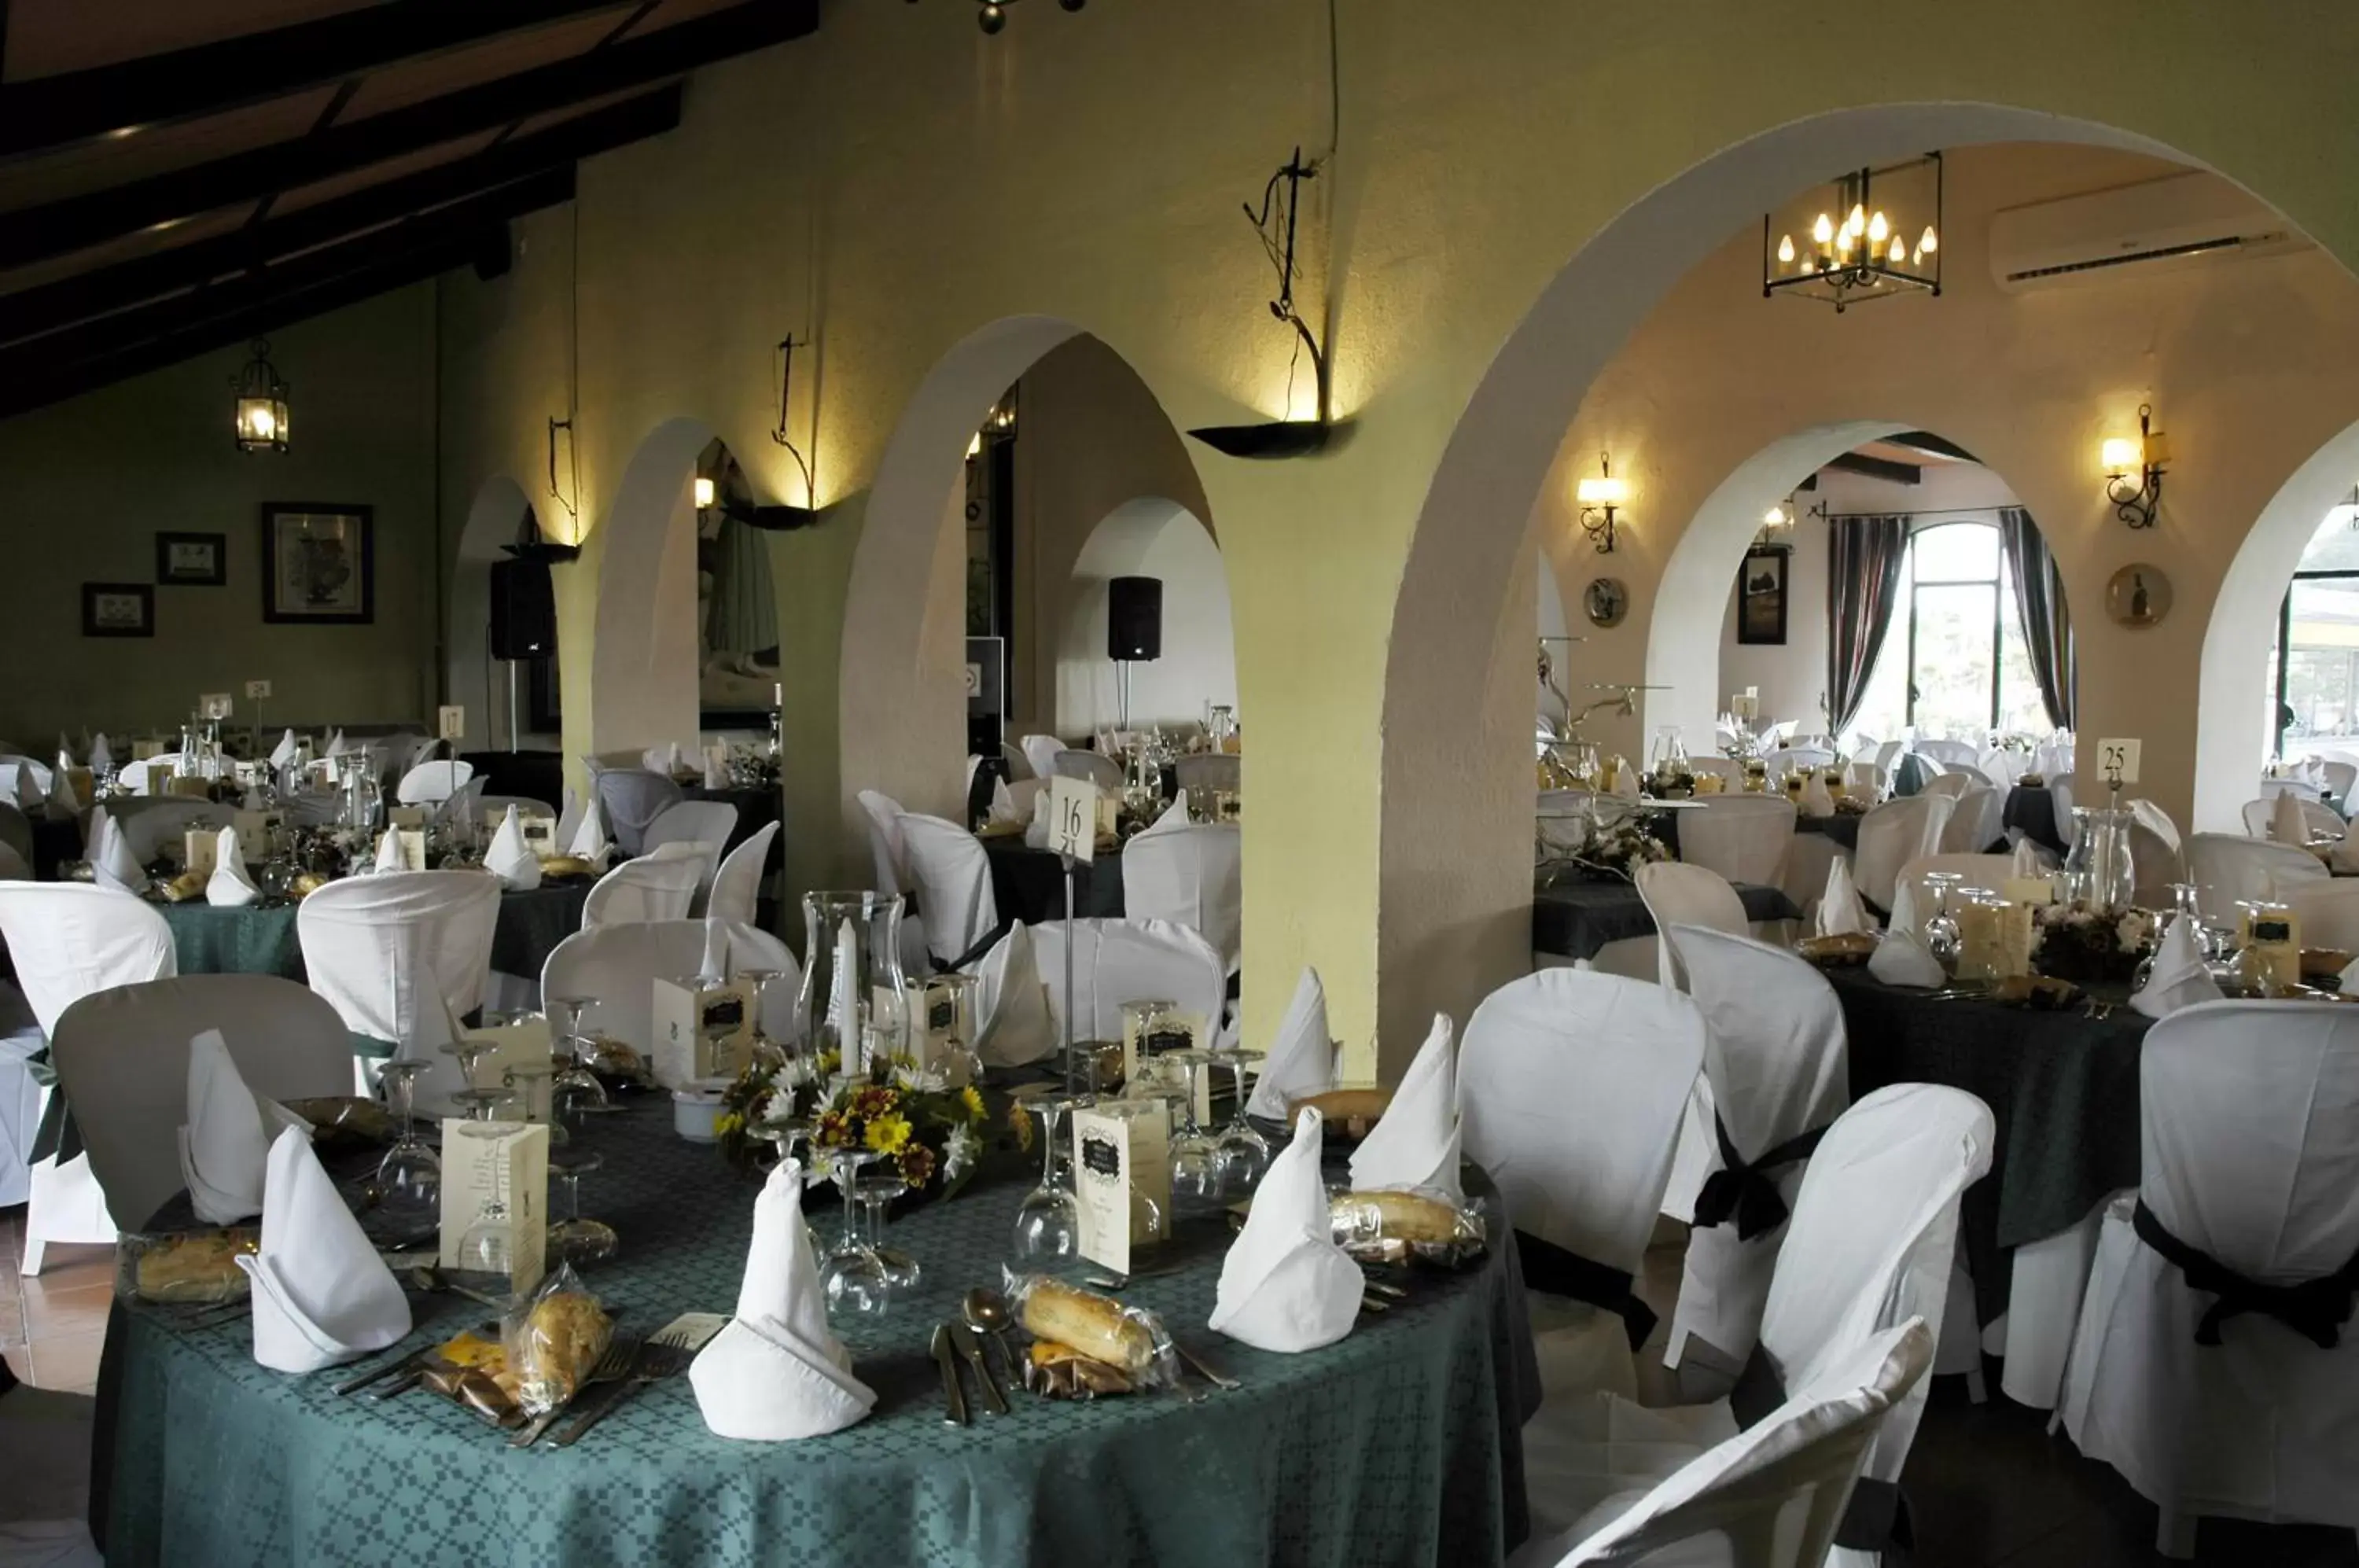 Banquet/Function facilities, Restaurant/Places to Eat in Mesón de la Molinera